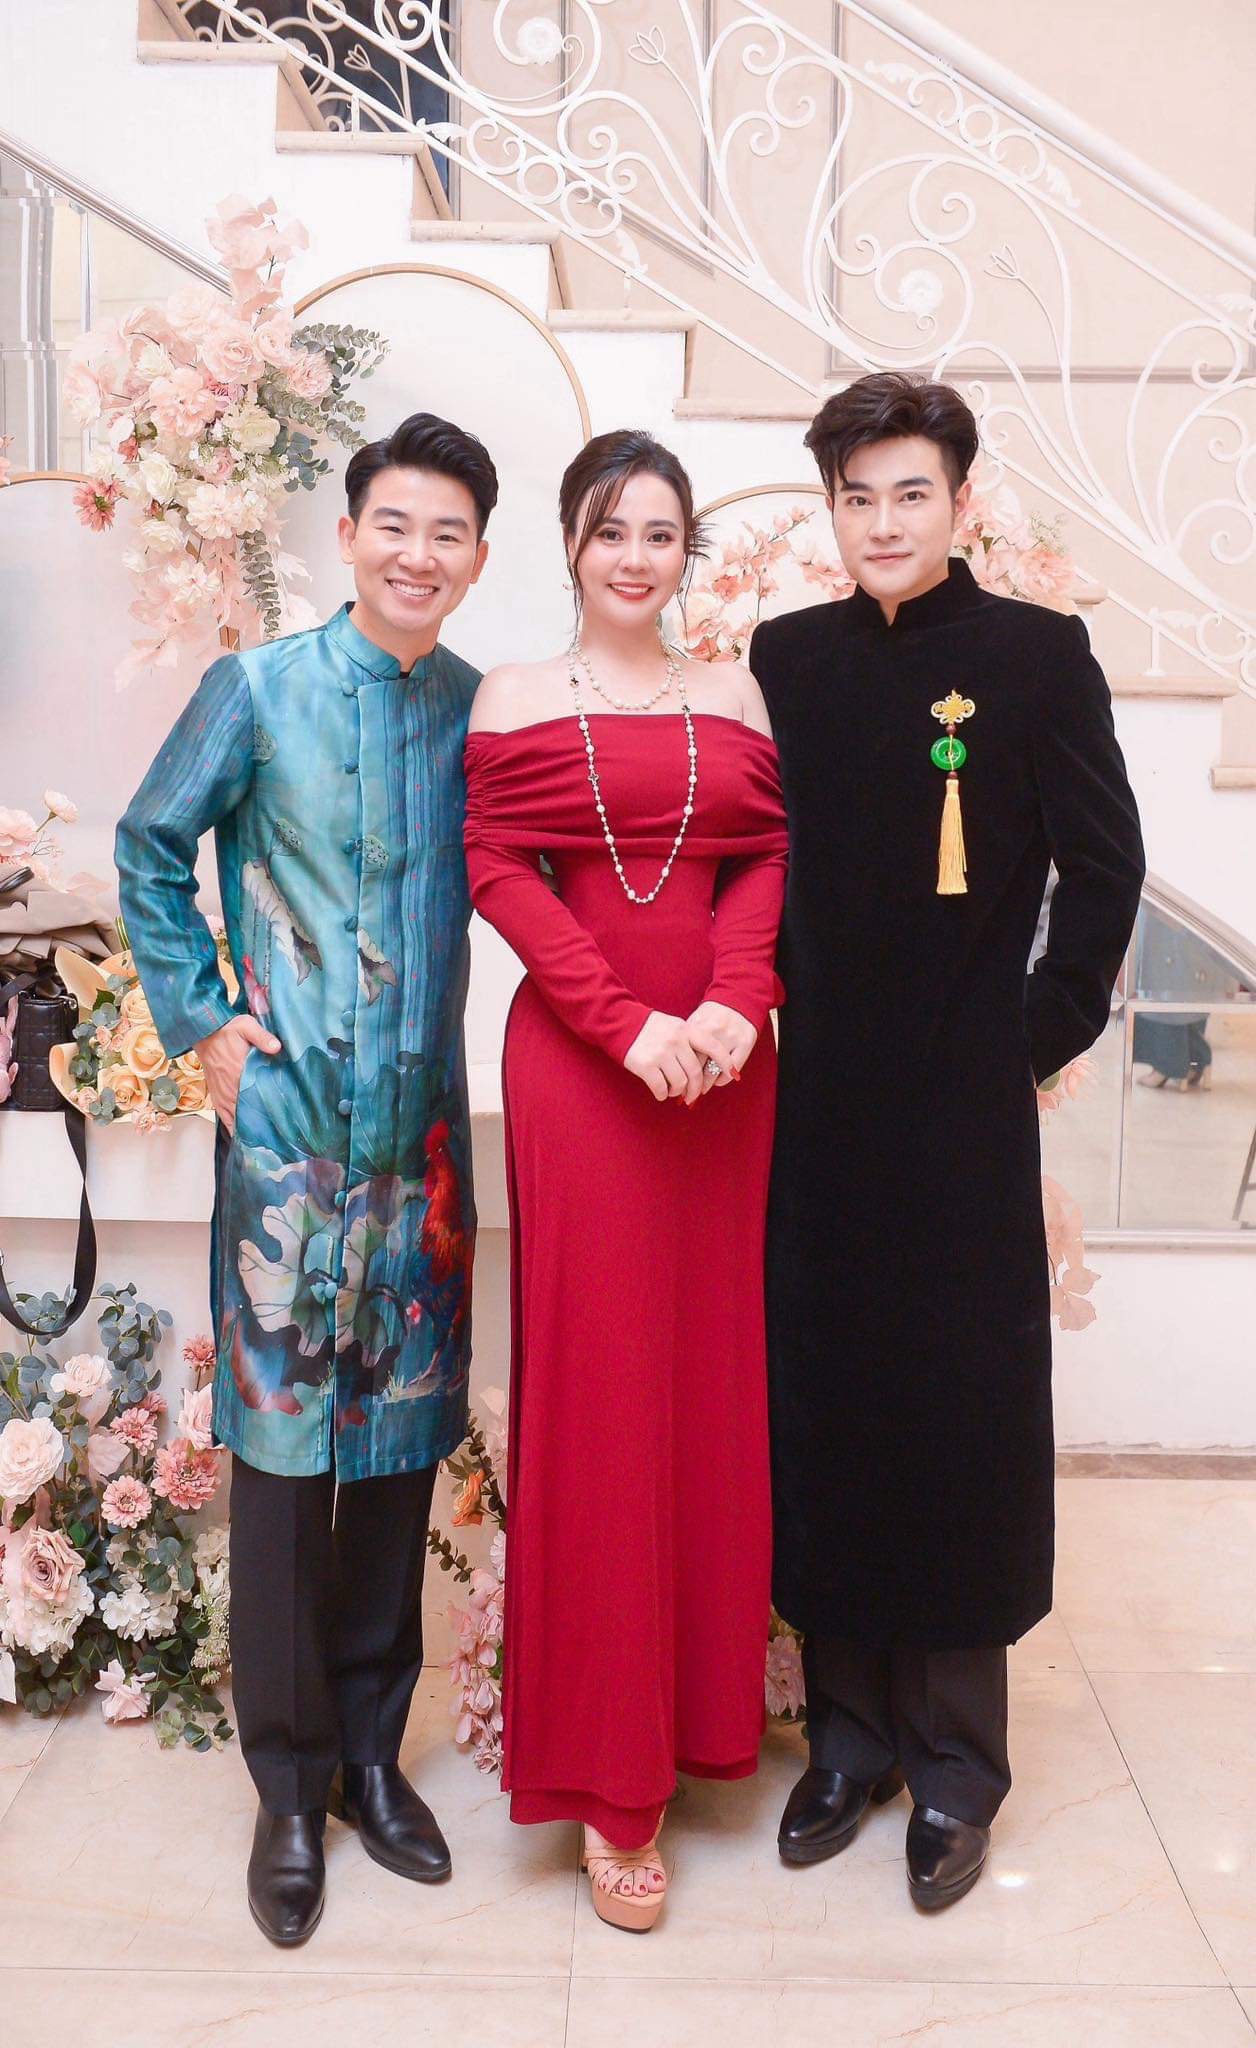 “Hoa hậu 2 nhiệm kỳ” Phan Kim Oanh thả dáng với áo dài đỏ rực - 1